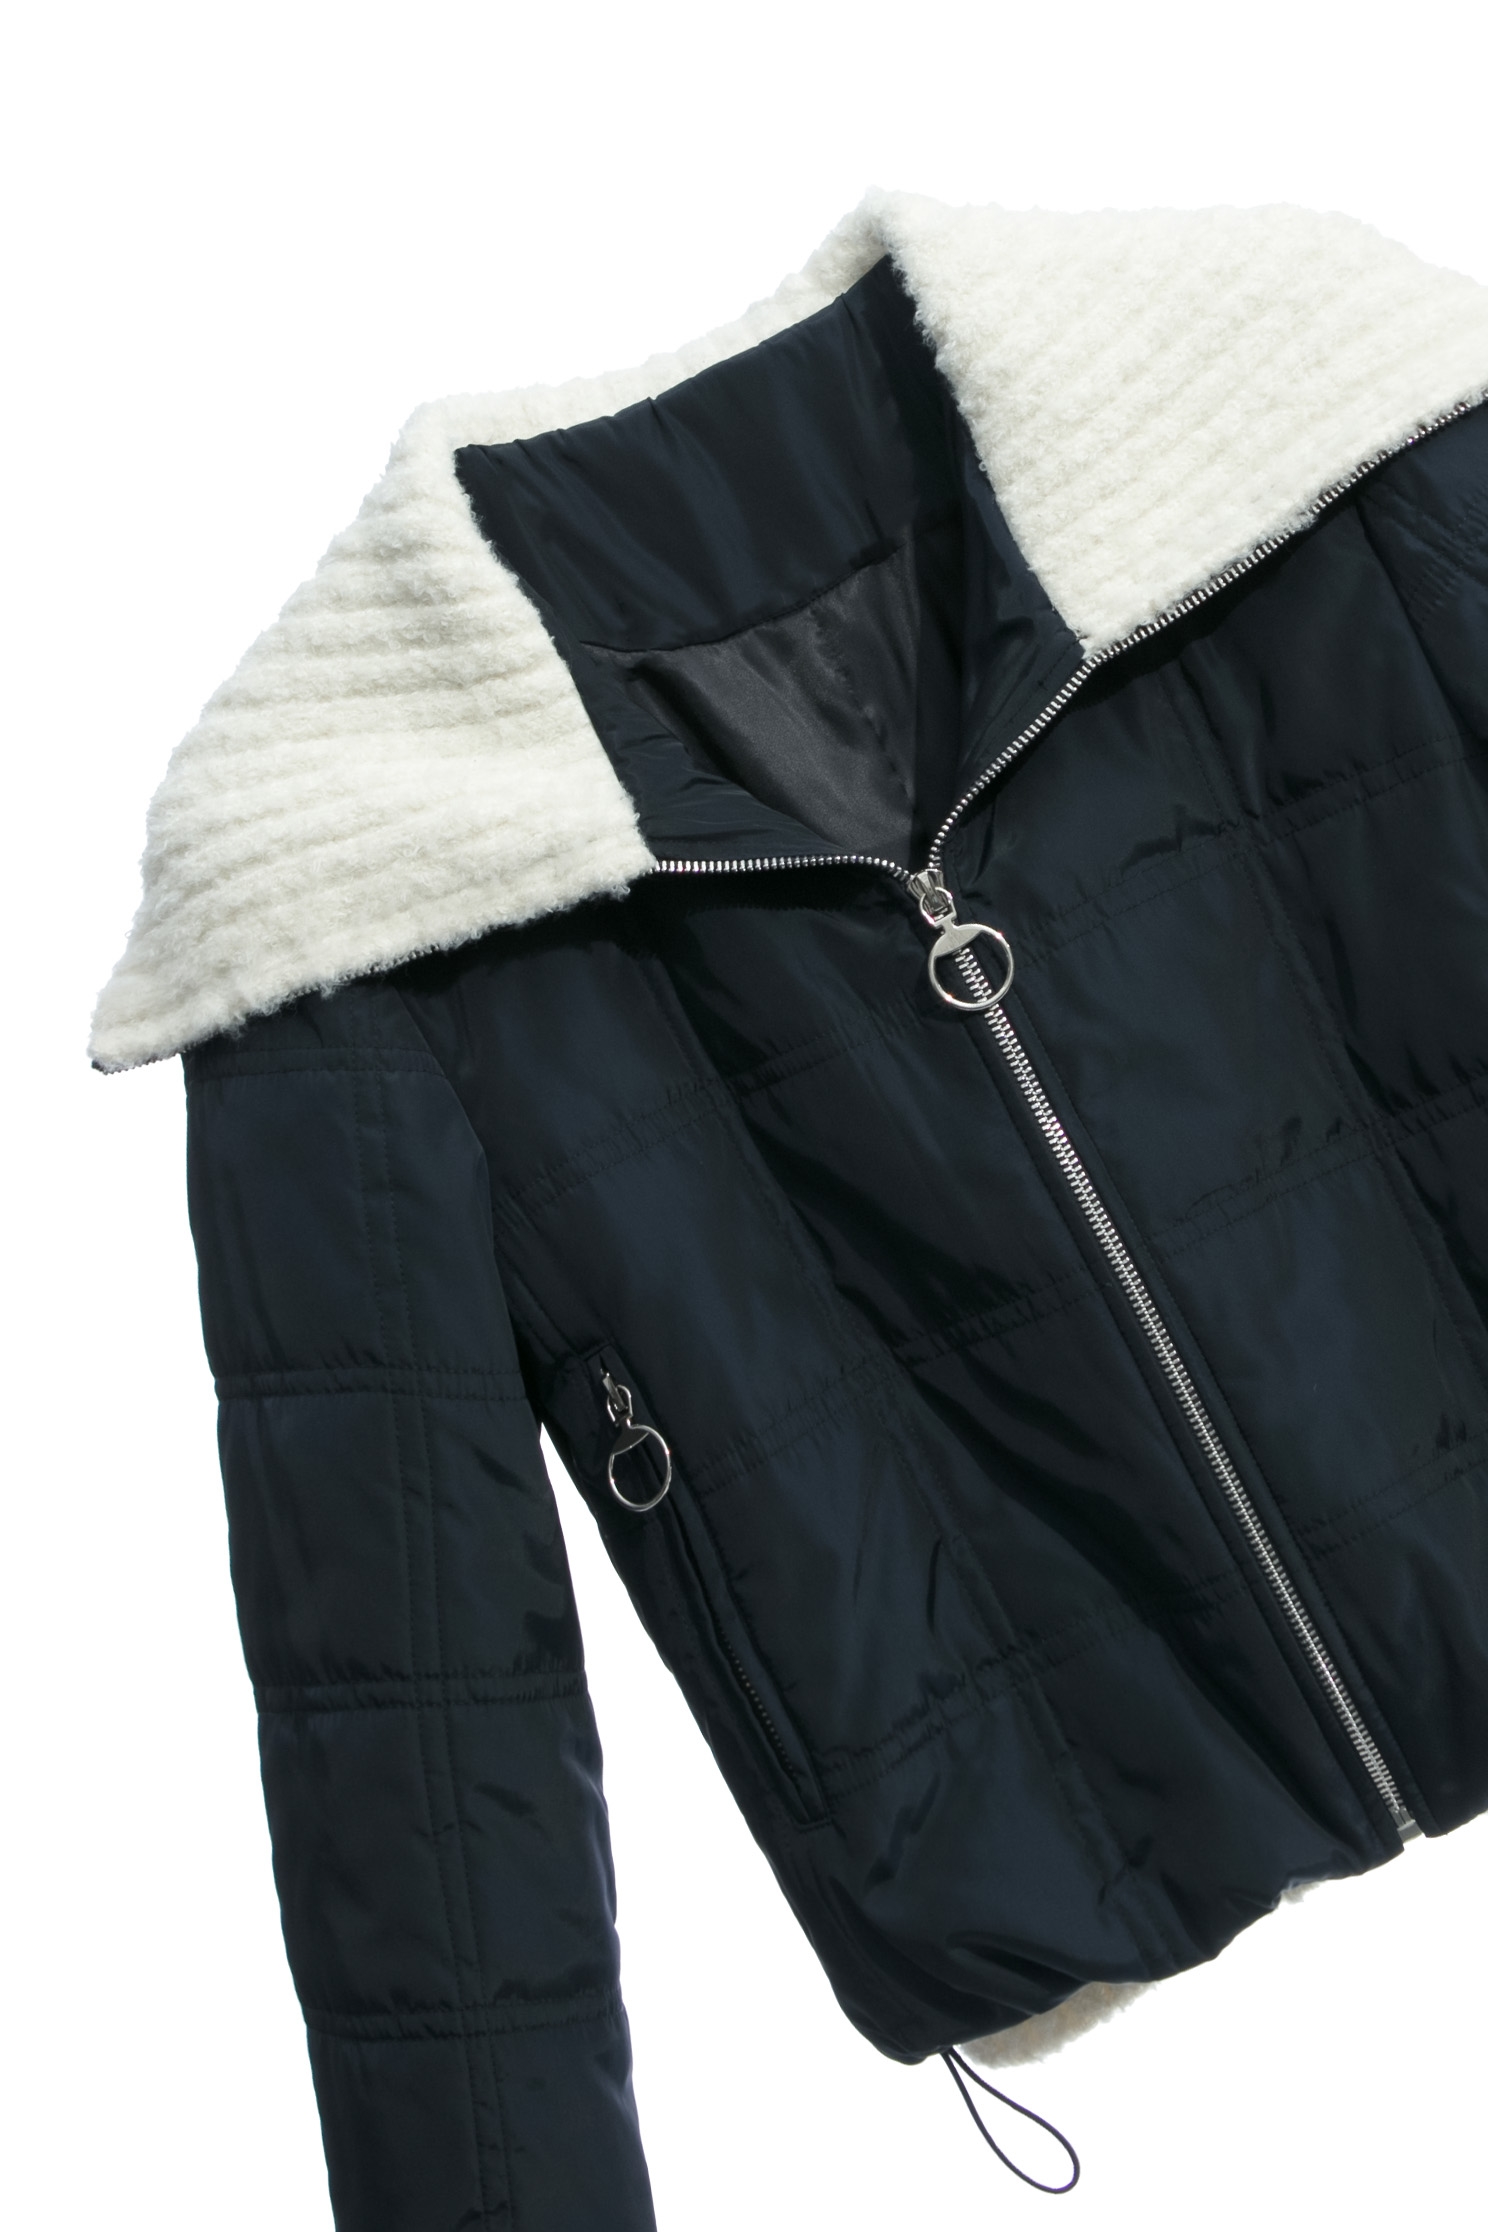 大洋藍格紋羽絨外套大洋藍格紋羽絨外套,一般外套,外套,格紋,秋冬穿搭,針織